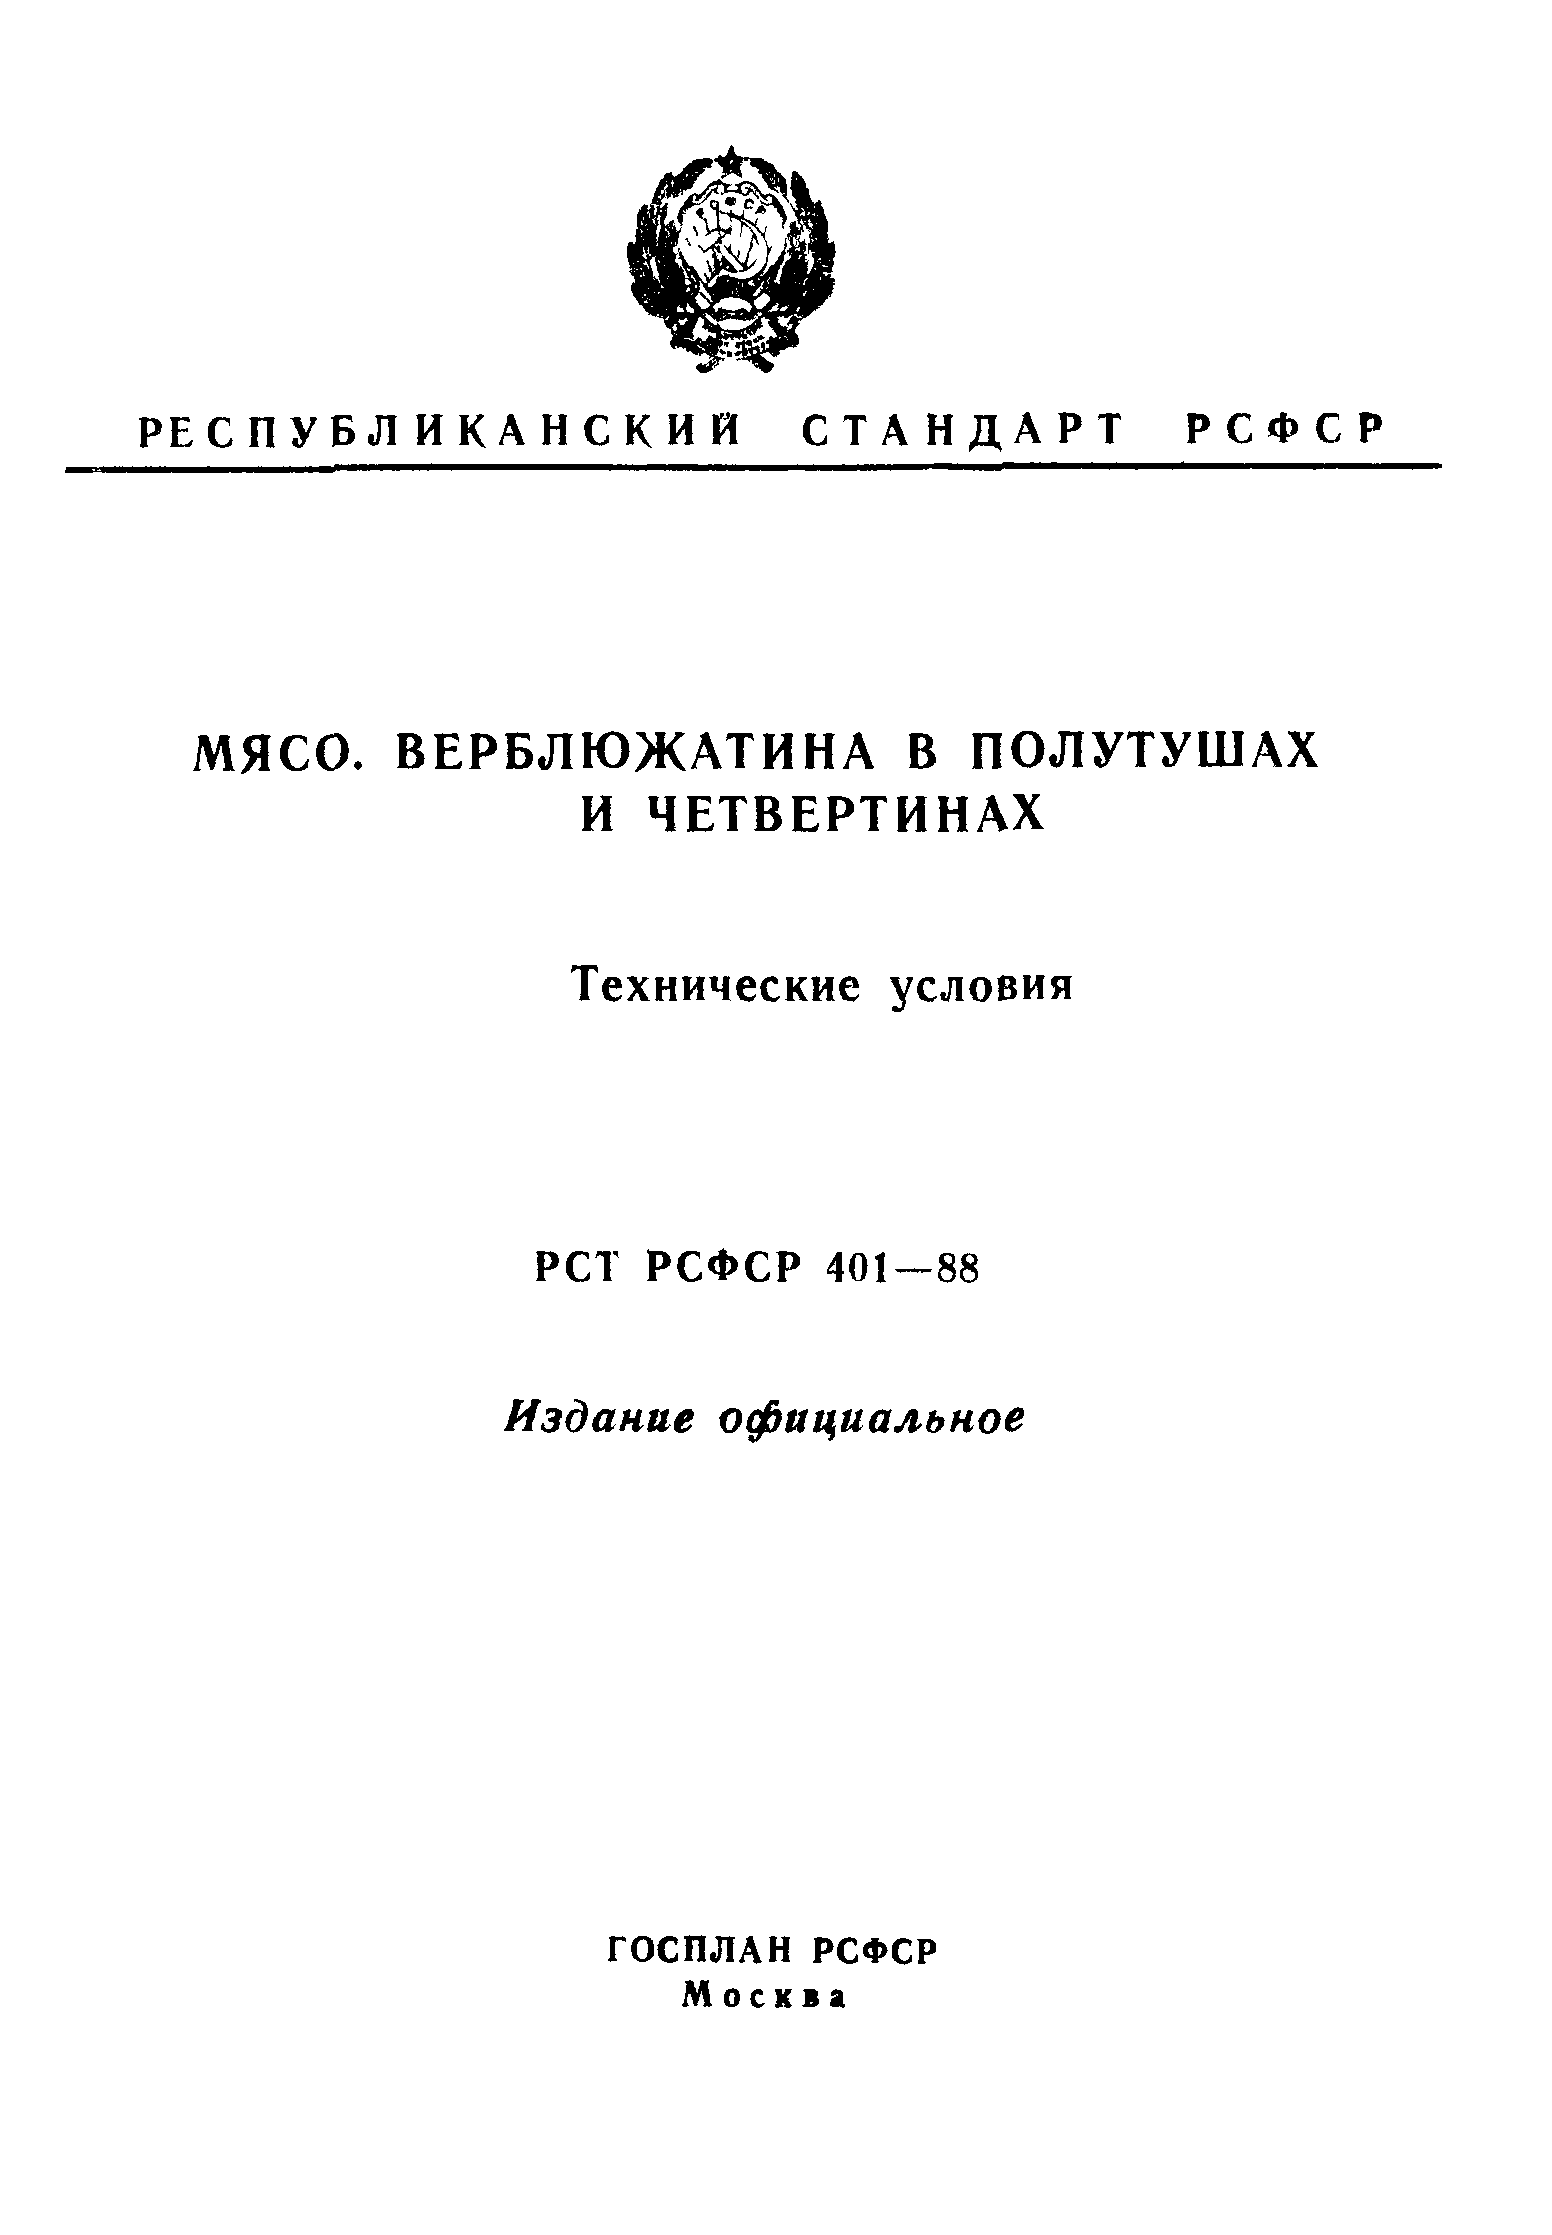 РСТ РСФСР 401-88